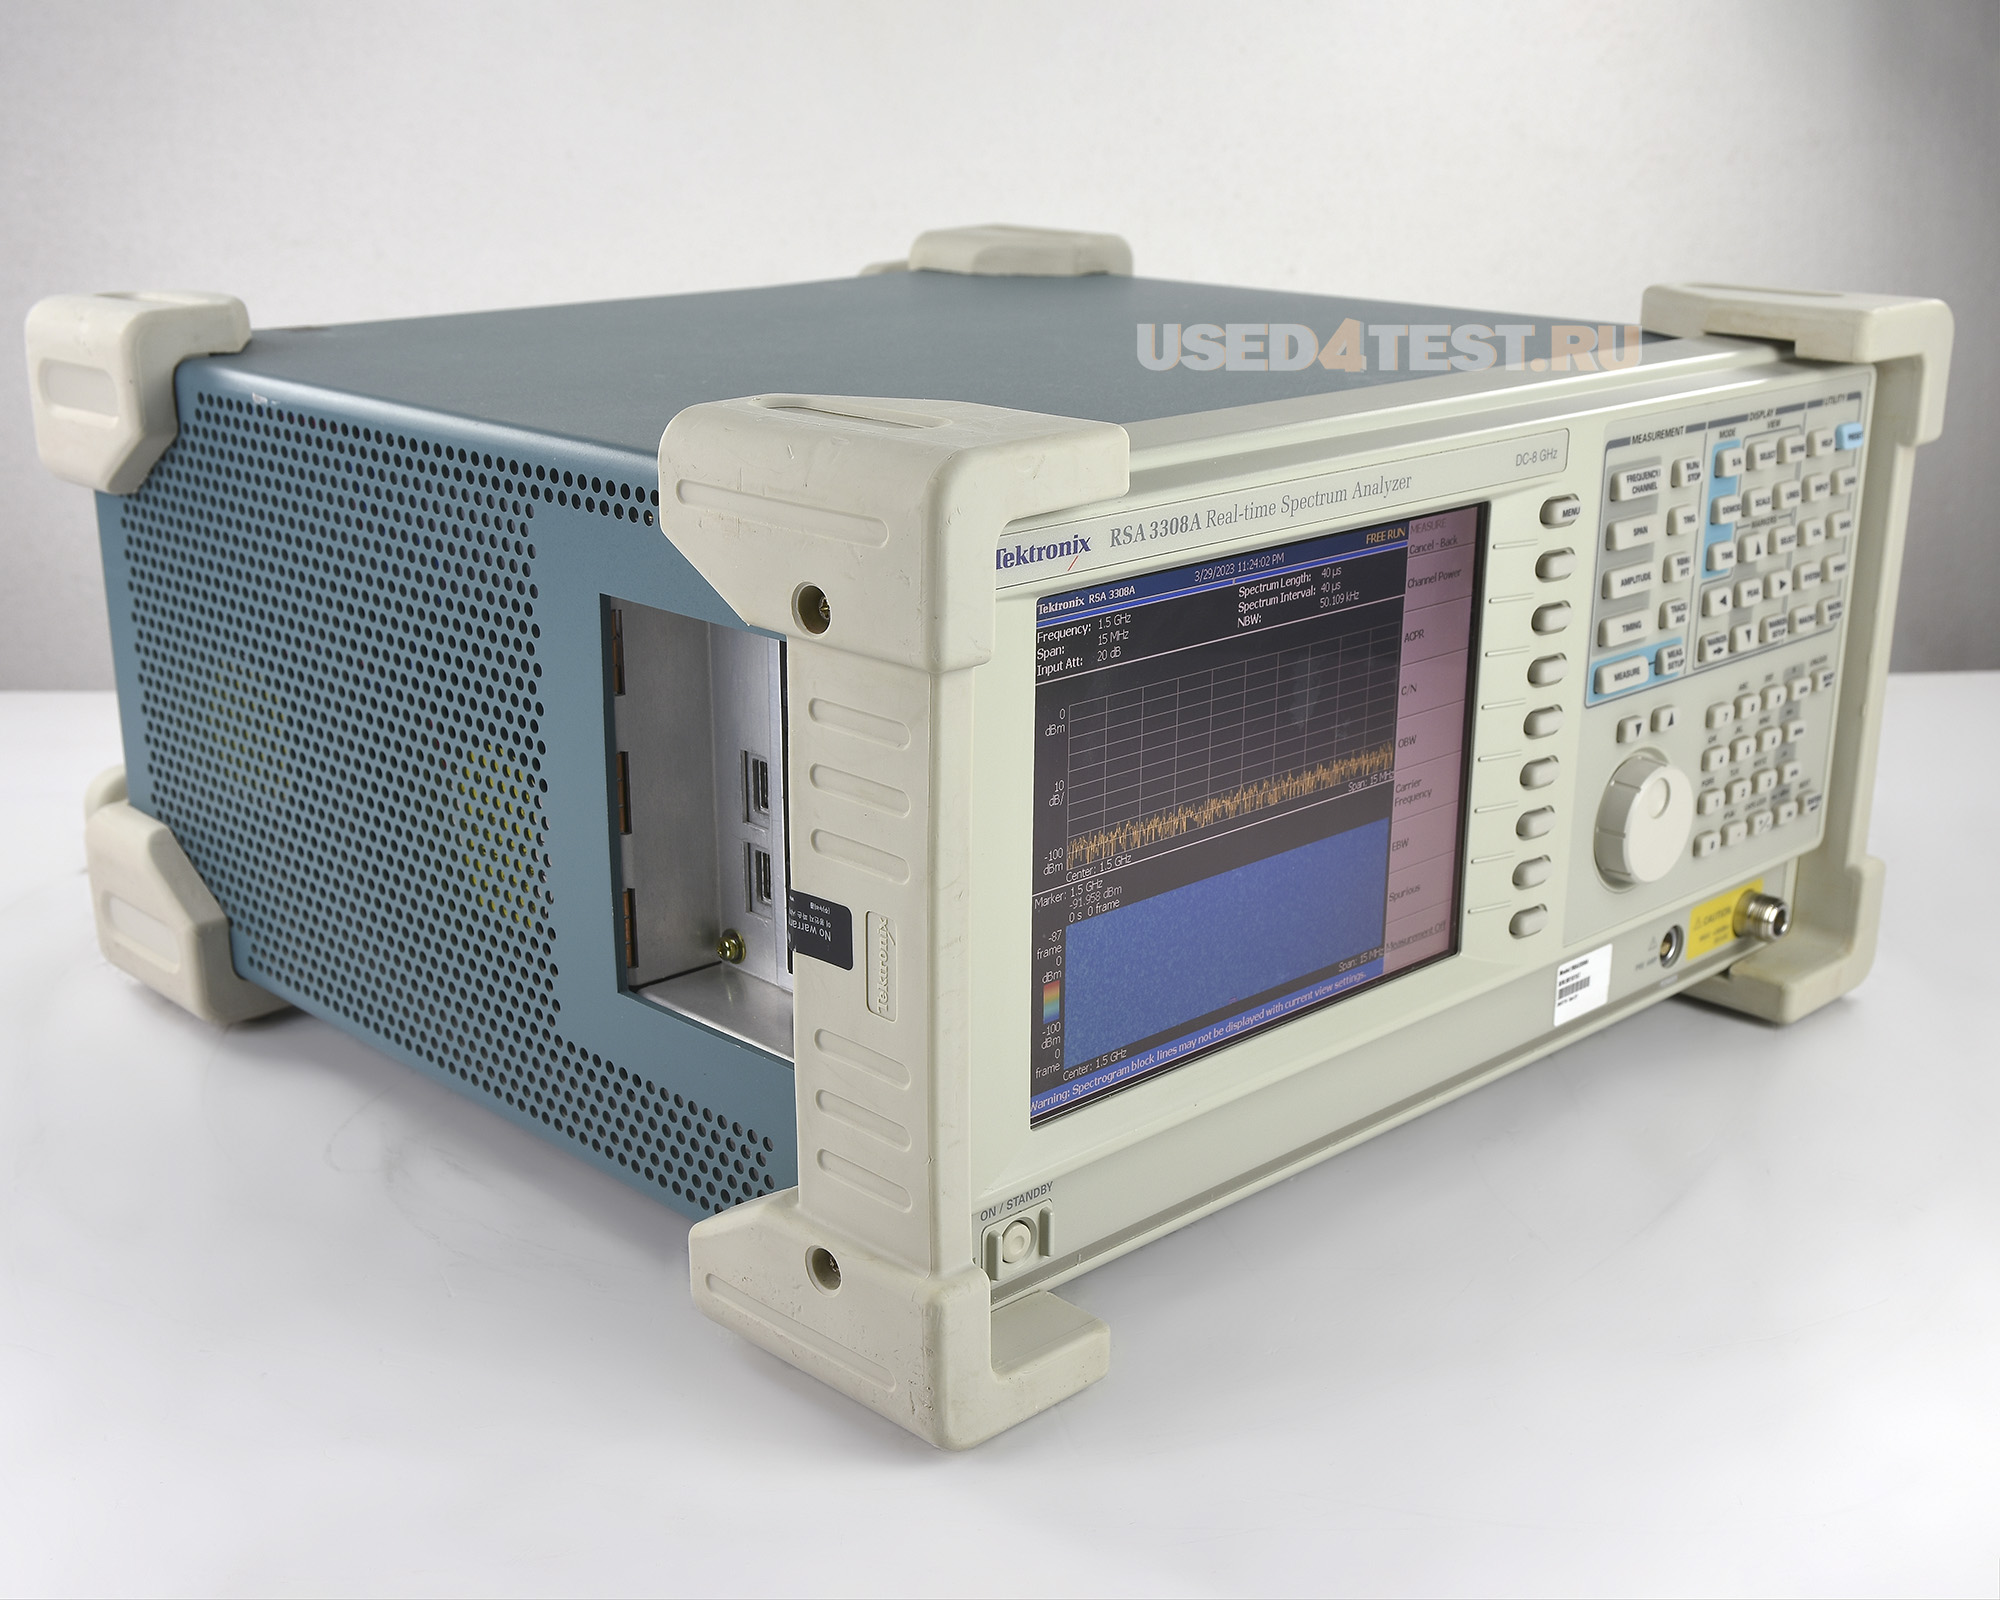 Анализатор спектра реального времениTektronix RSA3308Aс диапазоном DC — 8 ГГц 
 

 В комплекте с опциями: 


	02 — память на 65,5 млн. выборок, синхронизация по частотной маске
	21 — программное обеспечение для расширенного набора измерений

 

 Стоимость указана в Рублях DDP Москва по безналичному расчету без НДС
